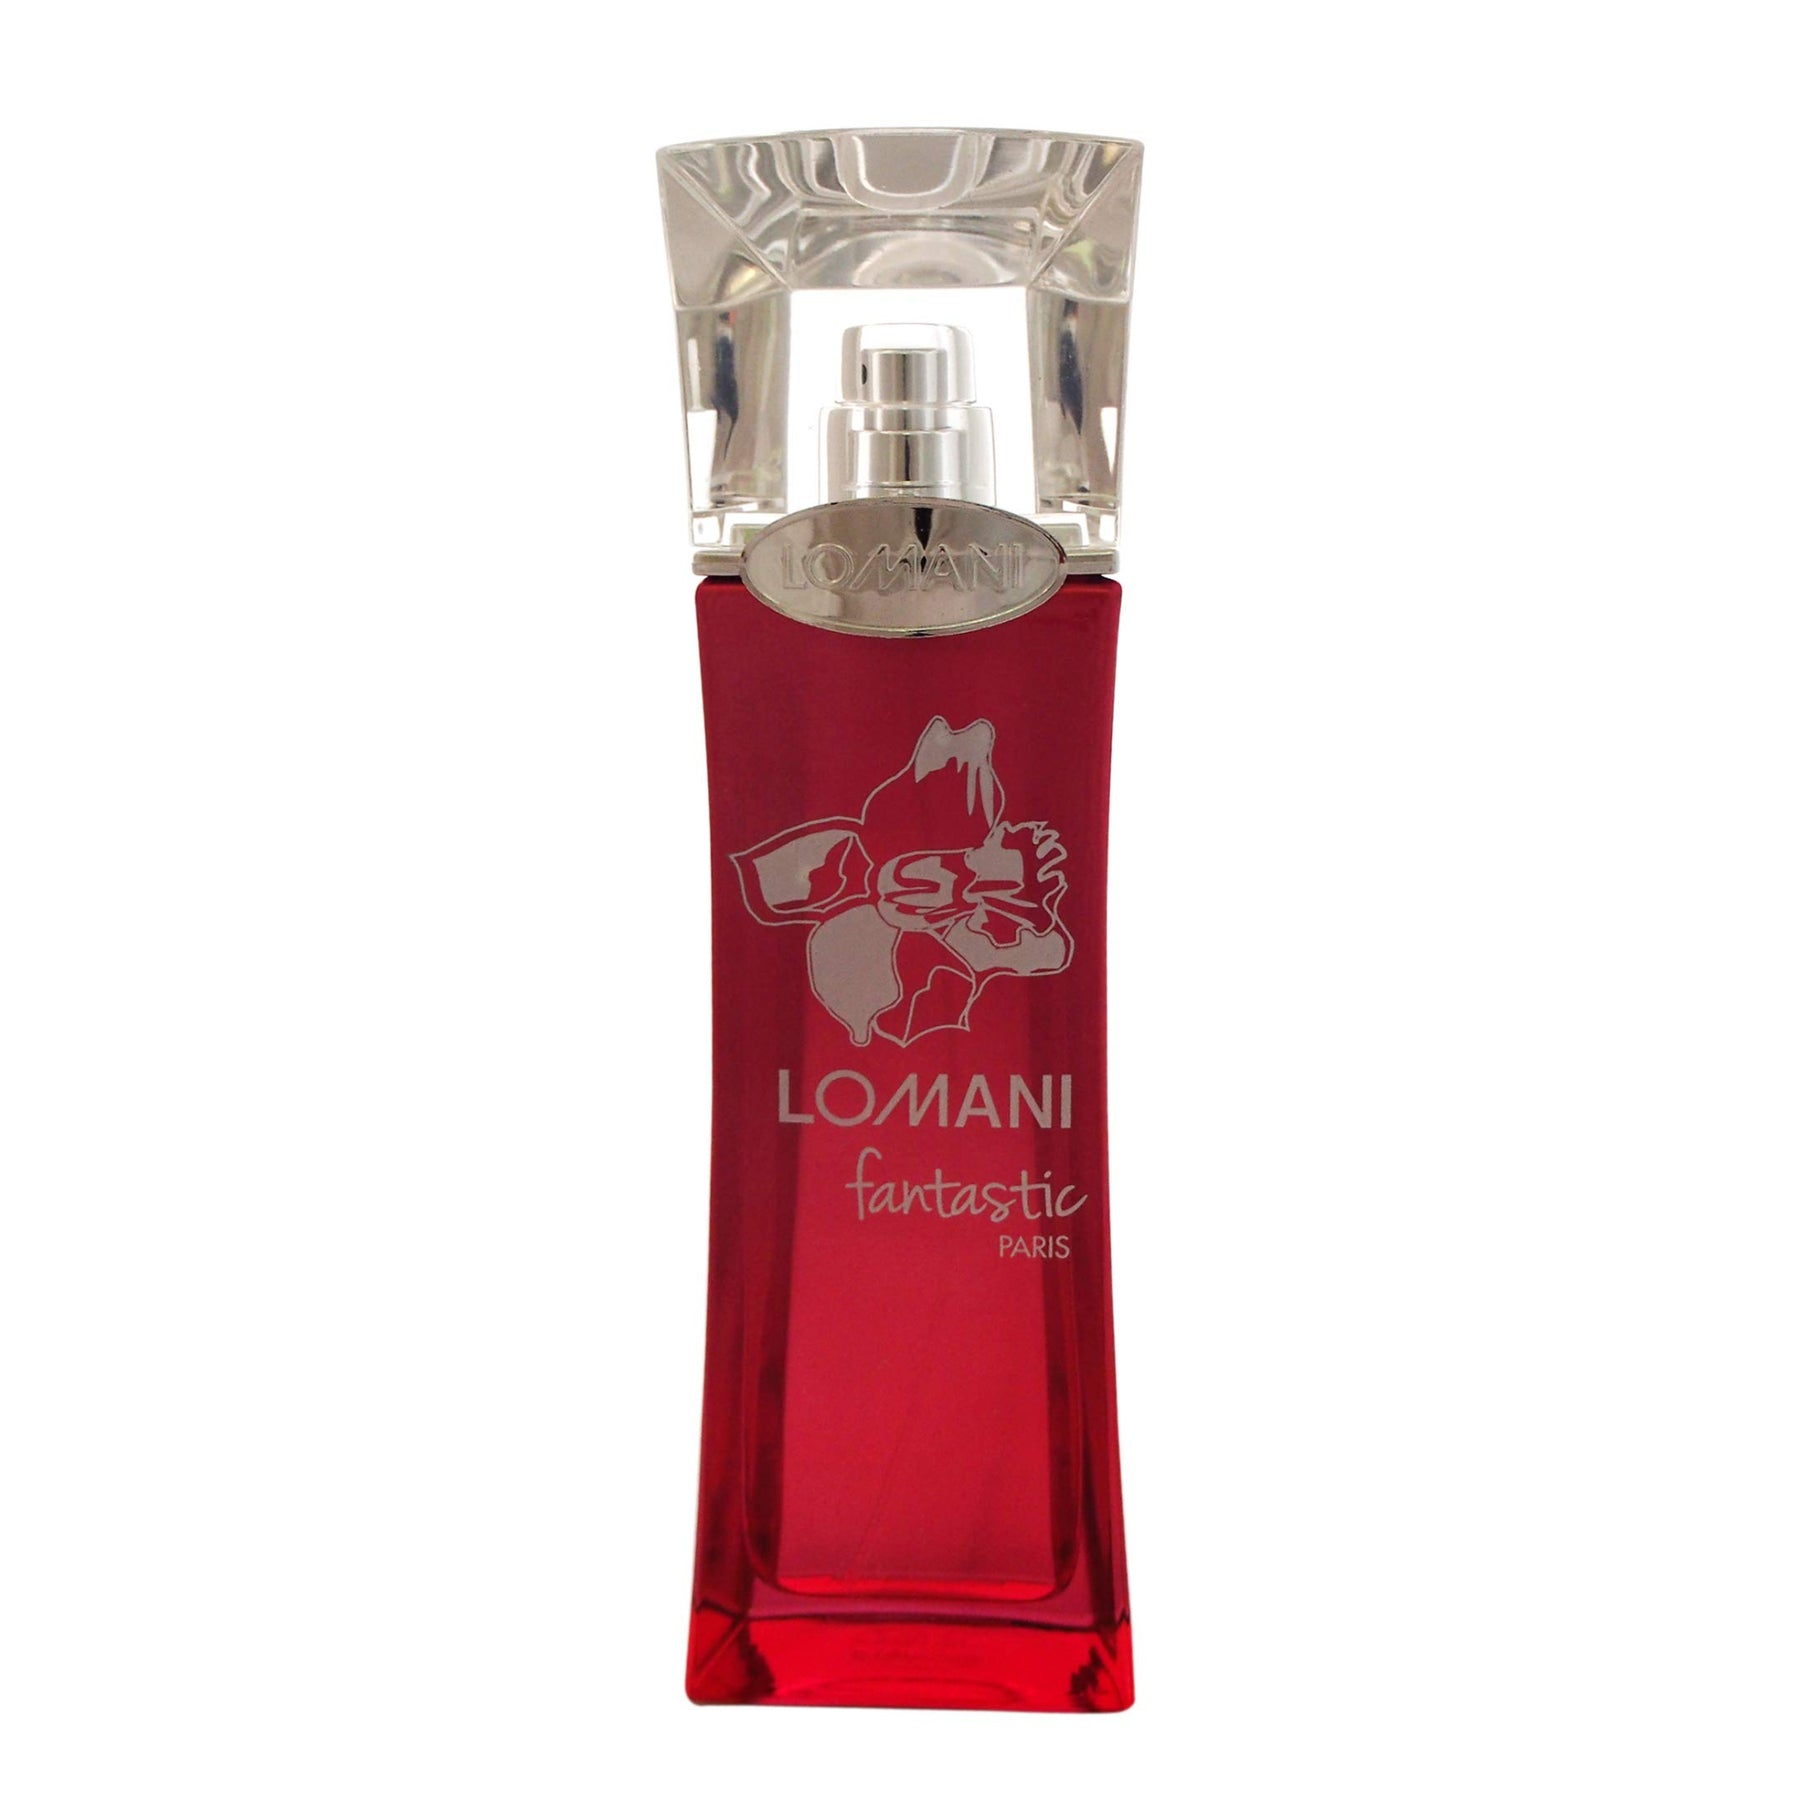 Fantastic by Lomani 3.3 oz Eau de Parfum Spray for Women